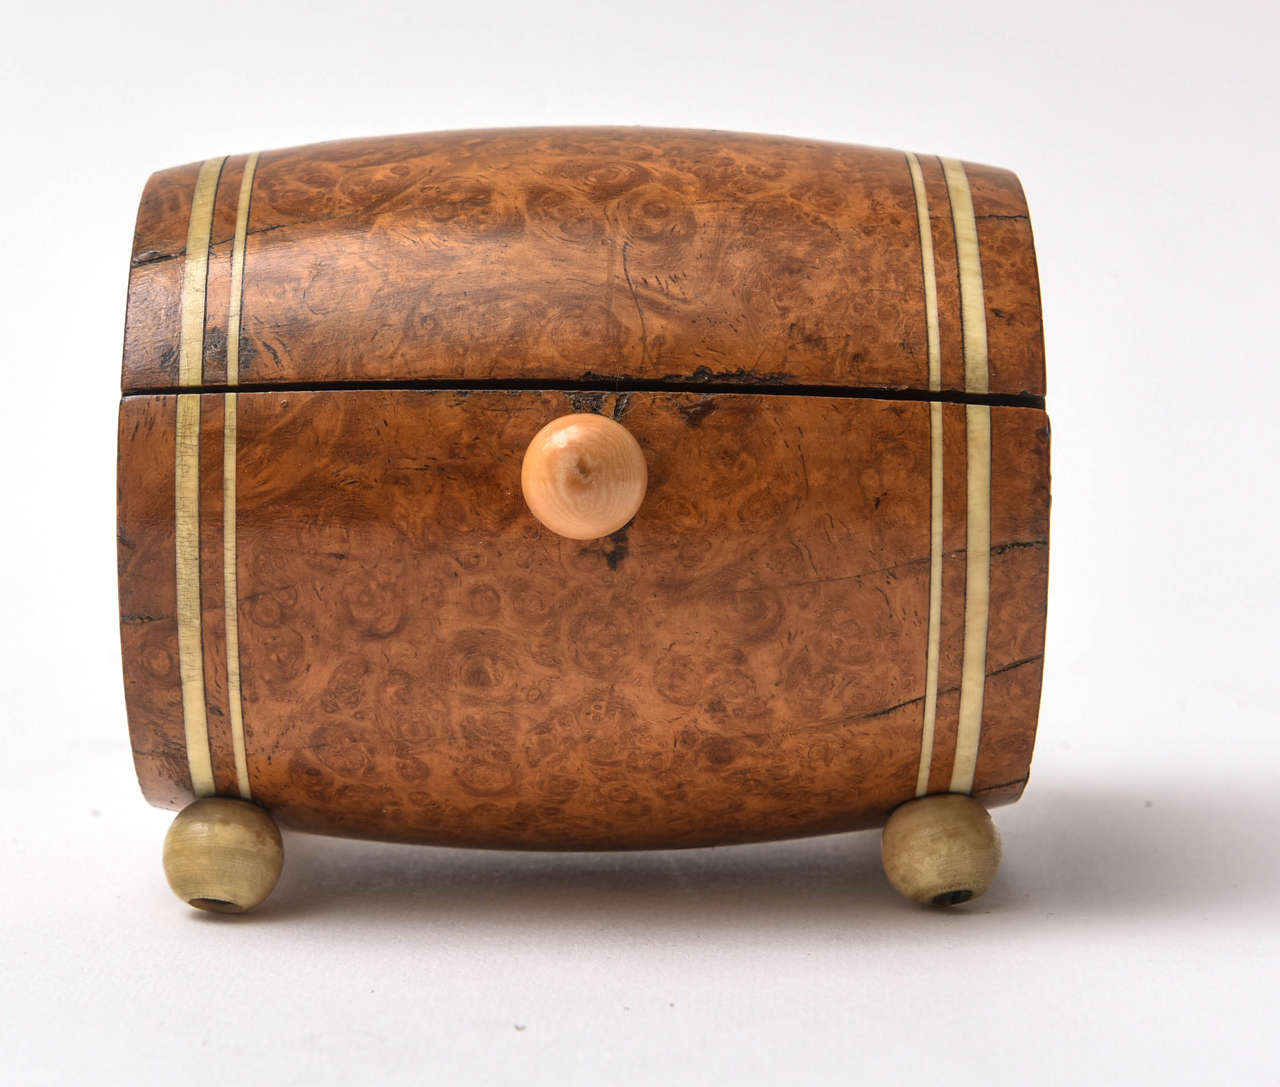 Barrel shaped cigarette holder in burl wood. Spring loaded lid with sliding knob.